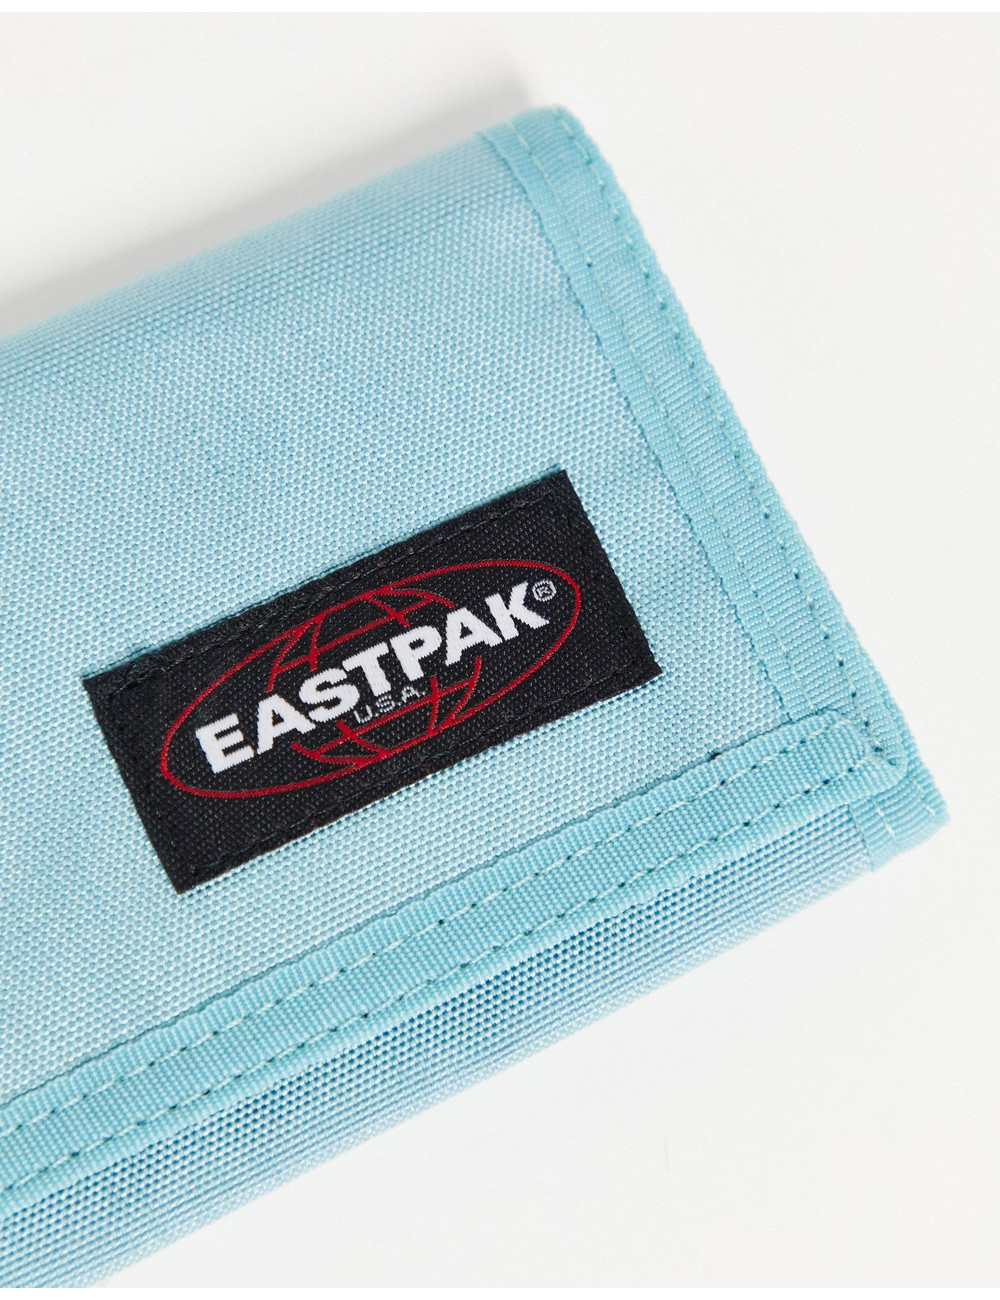 Eastpak single purse in blue